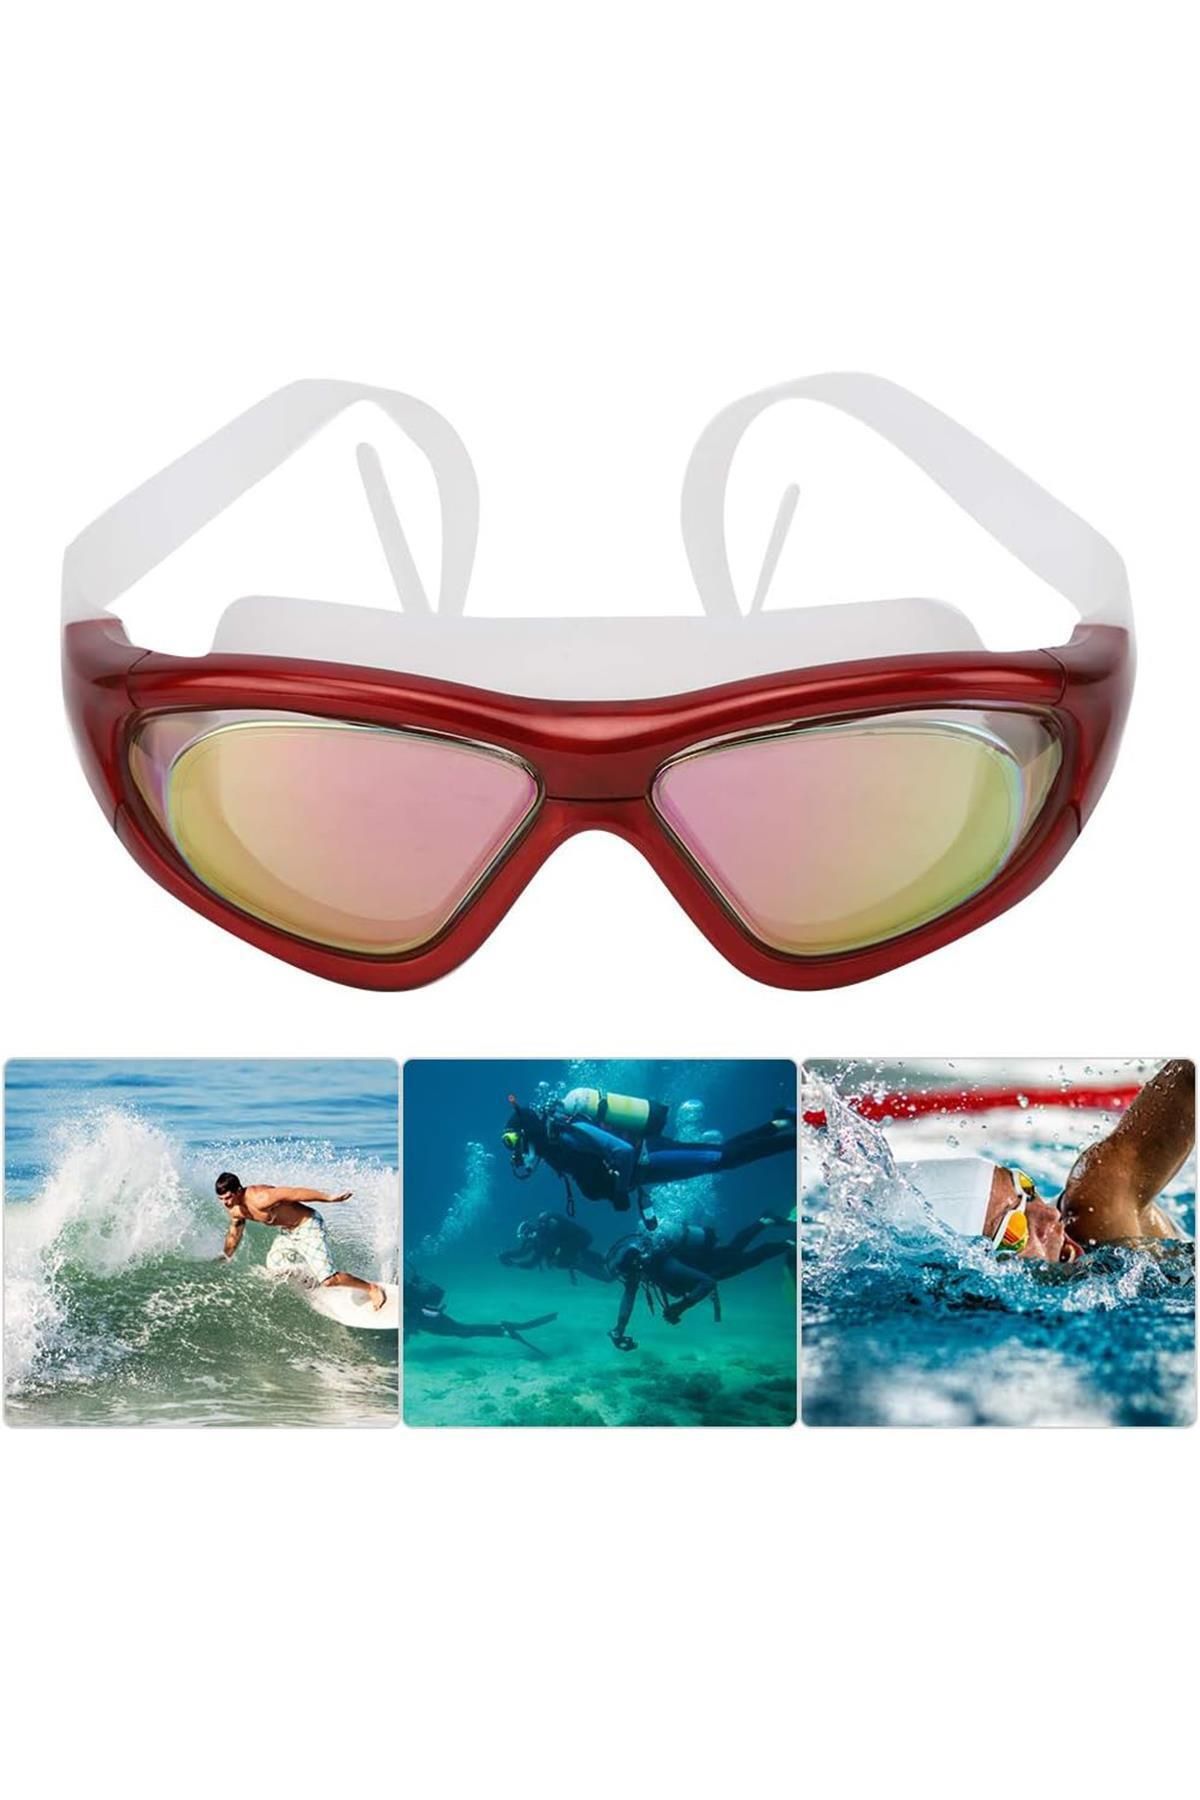 Hsport pro seviye Geniş Açı buğu yapmaz su geçirmez vakkumlu UV korumalı yüzücü havuz ve deniz gözlüğü Kutu